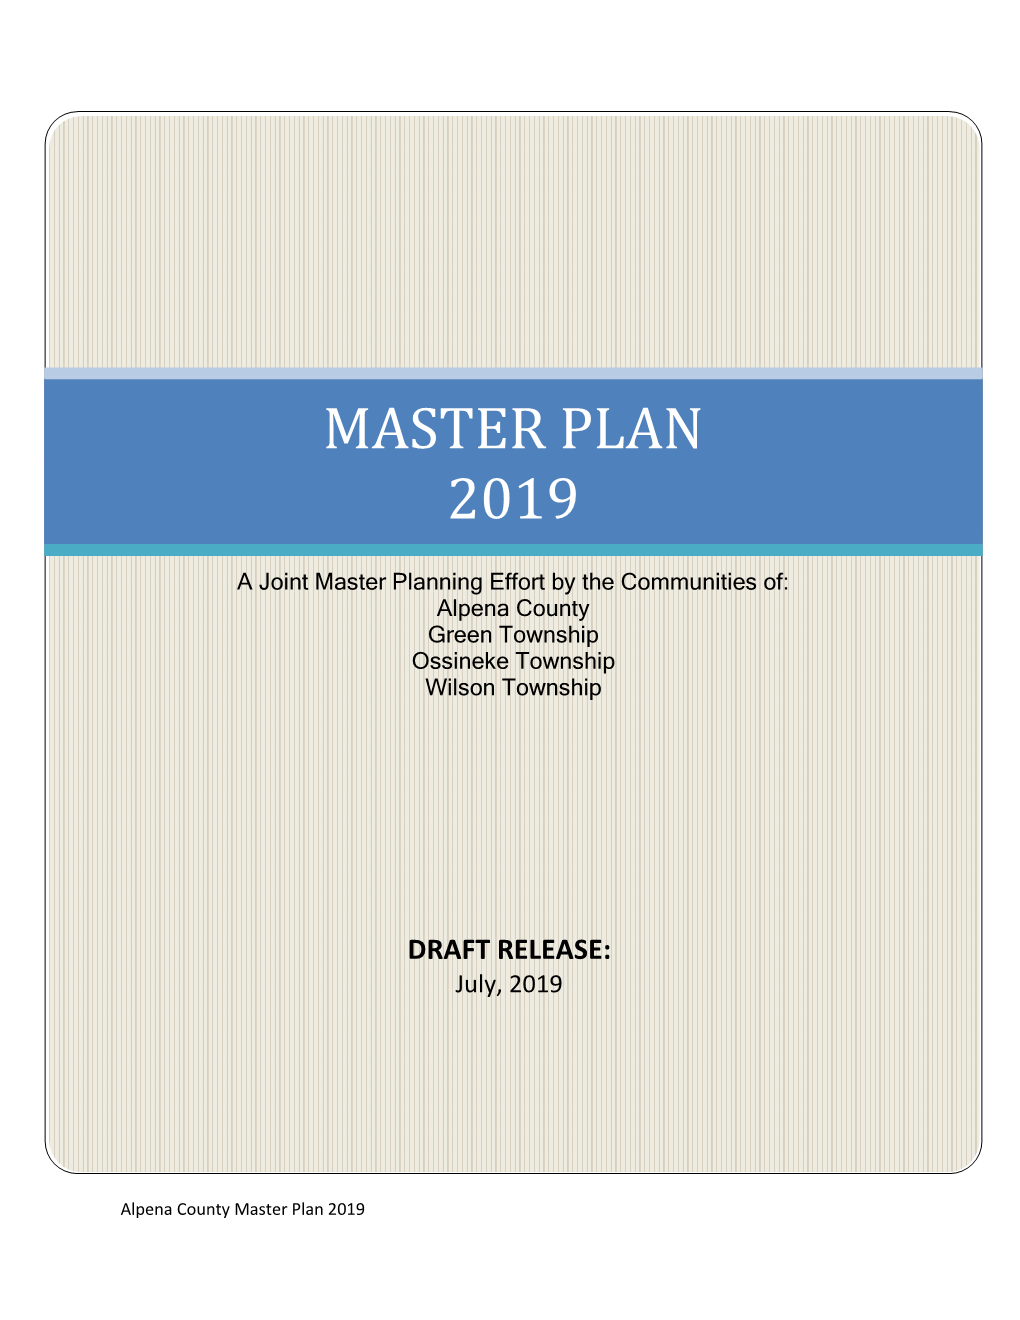 Master Plan 2019